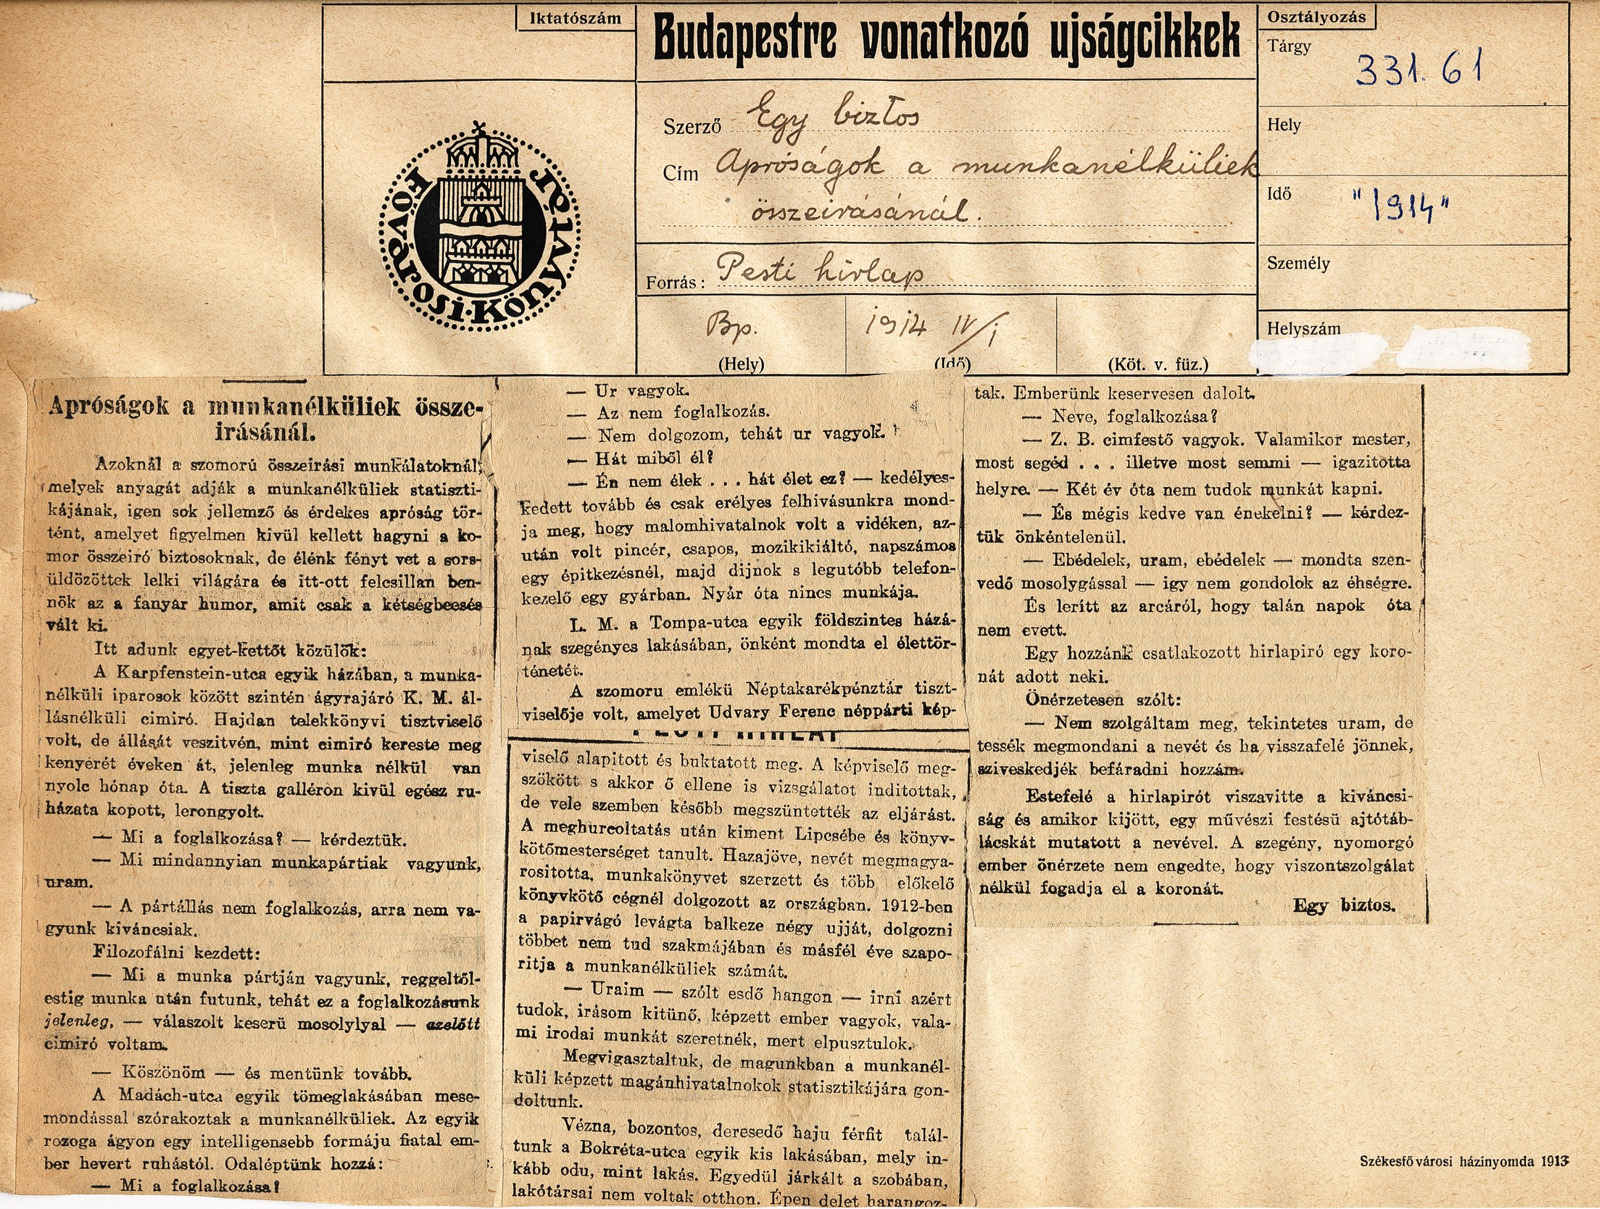 Egy cikk a könyvtár budapesti tárgyú sajtókivágatgyűjteményéből